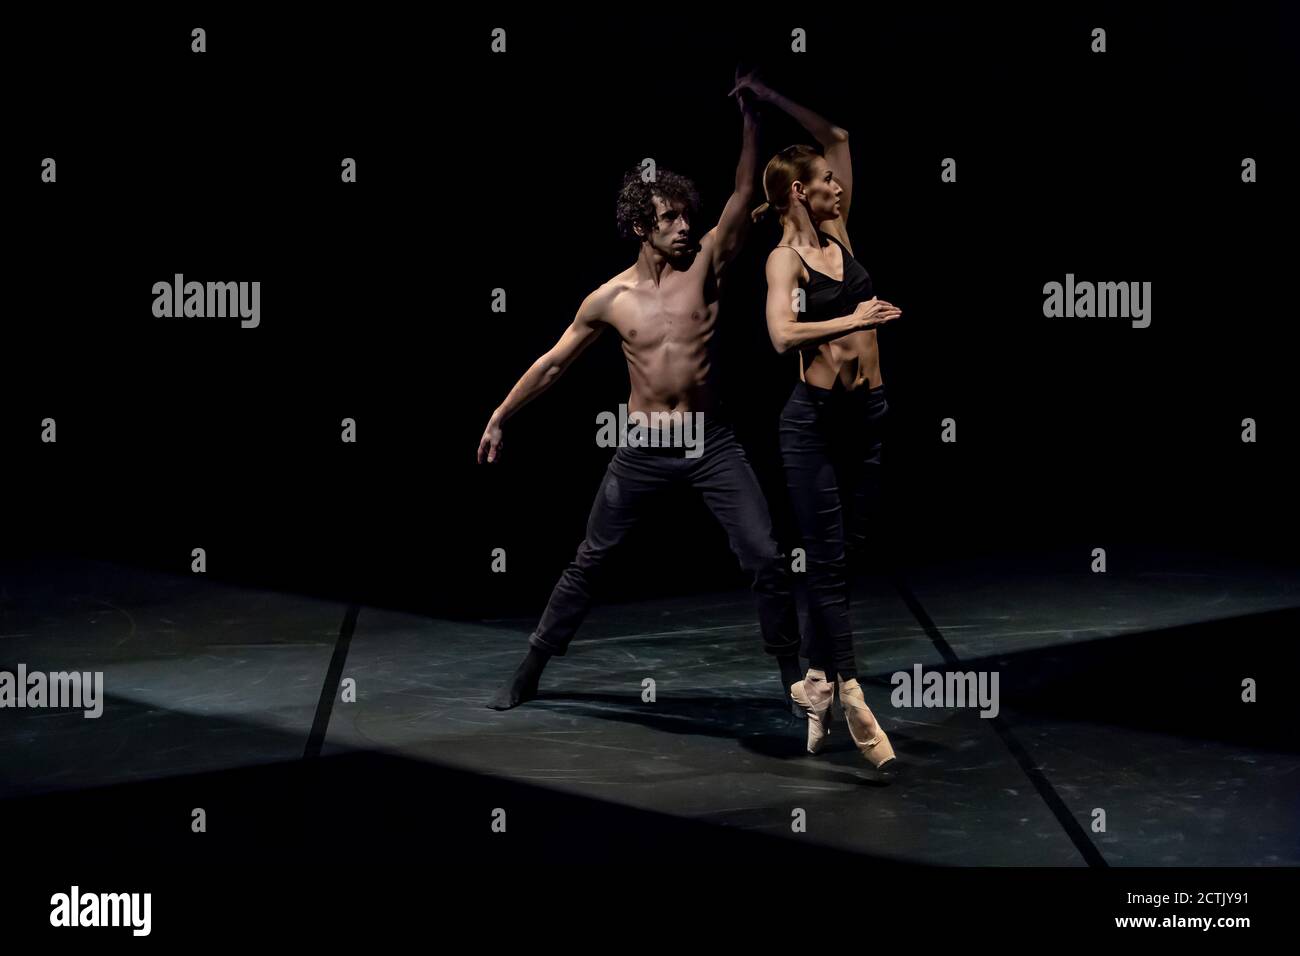 Danseuse féminine et masculine effectuant un ballet contemporain sur scène noire Banque D'Images